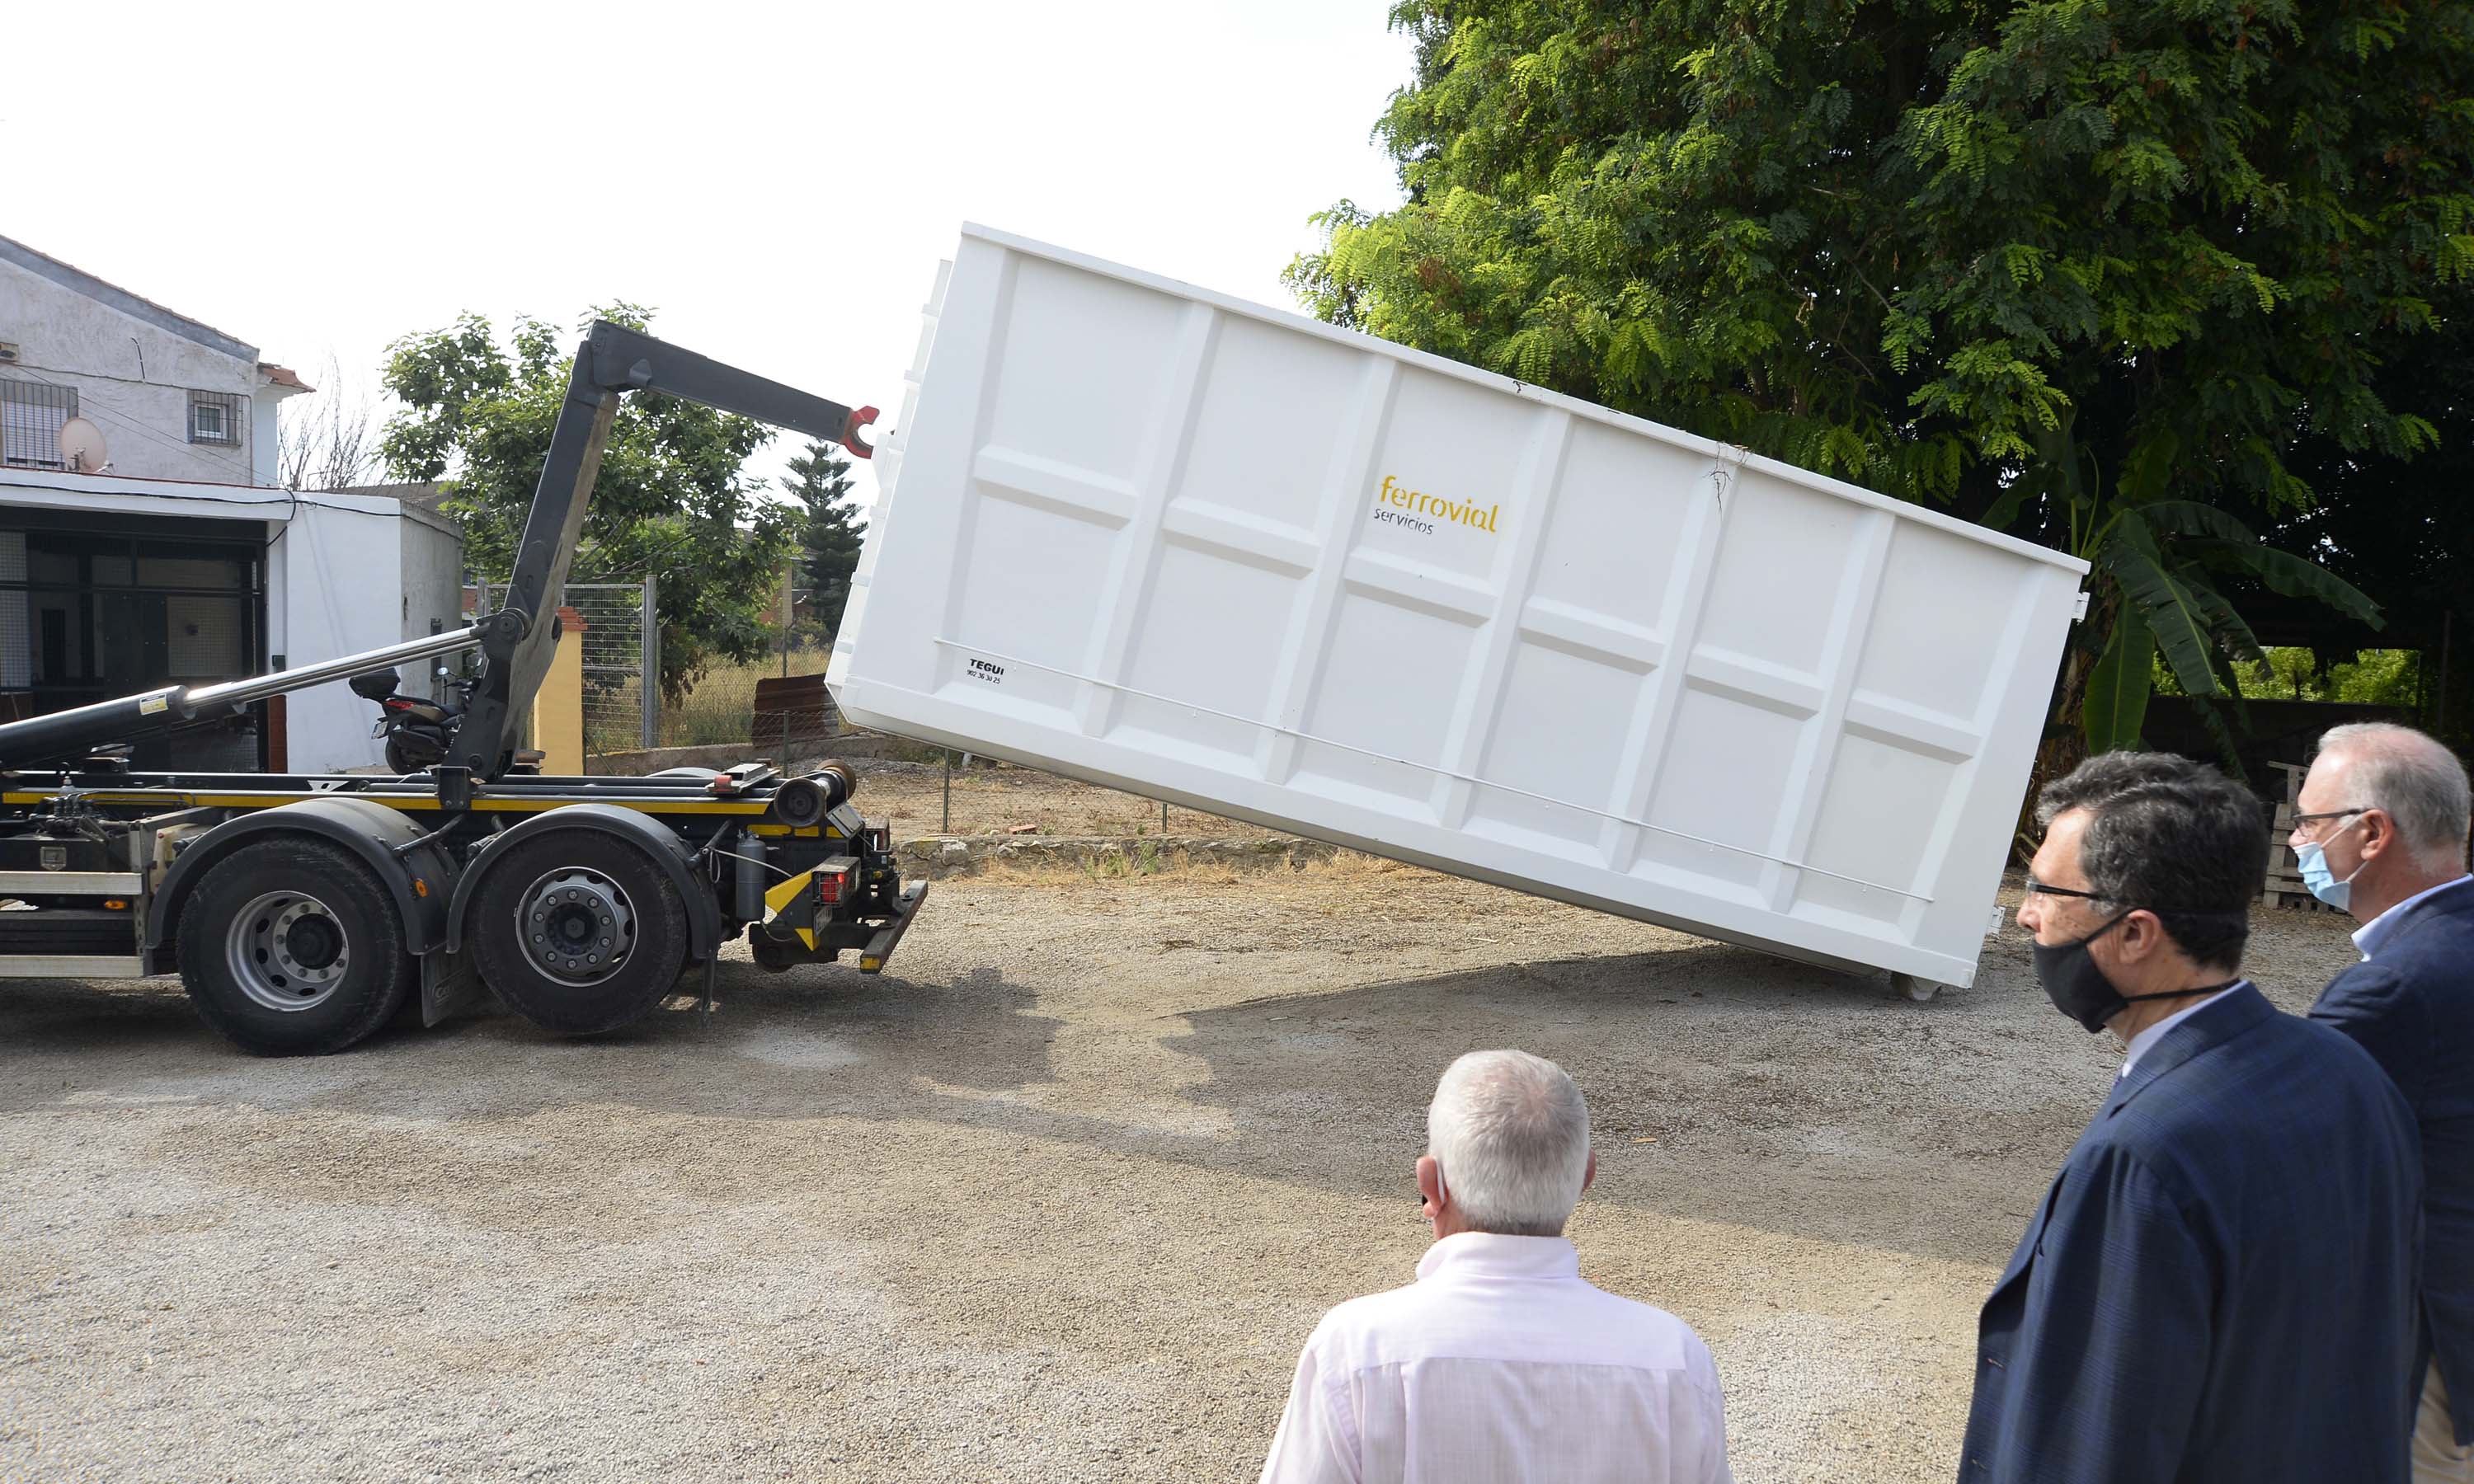 El gran contenedor es capaz de almacenar 2.000 kilos de restos de poda. Imagen: Ayto. de Murcia